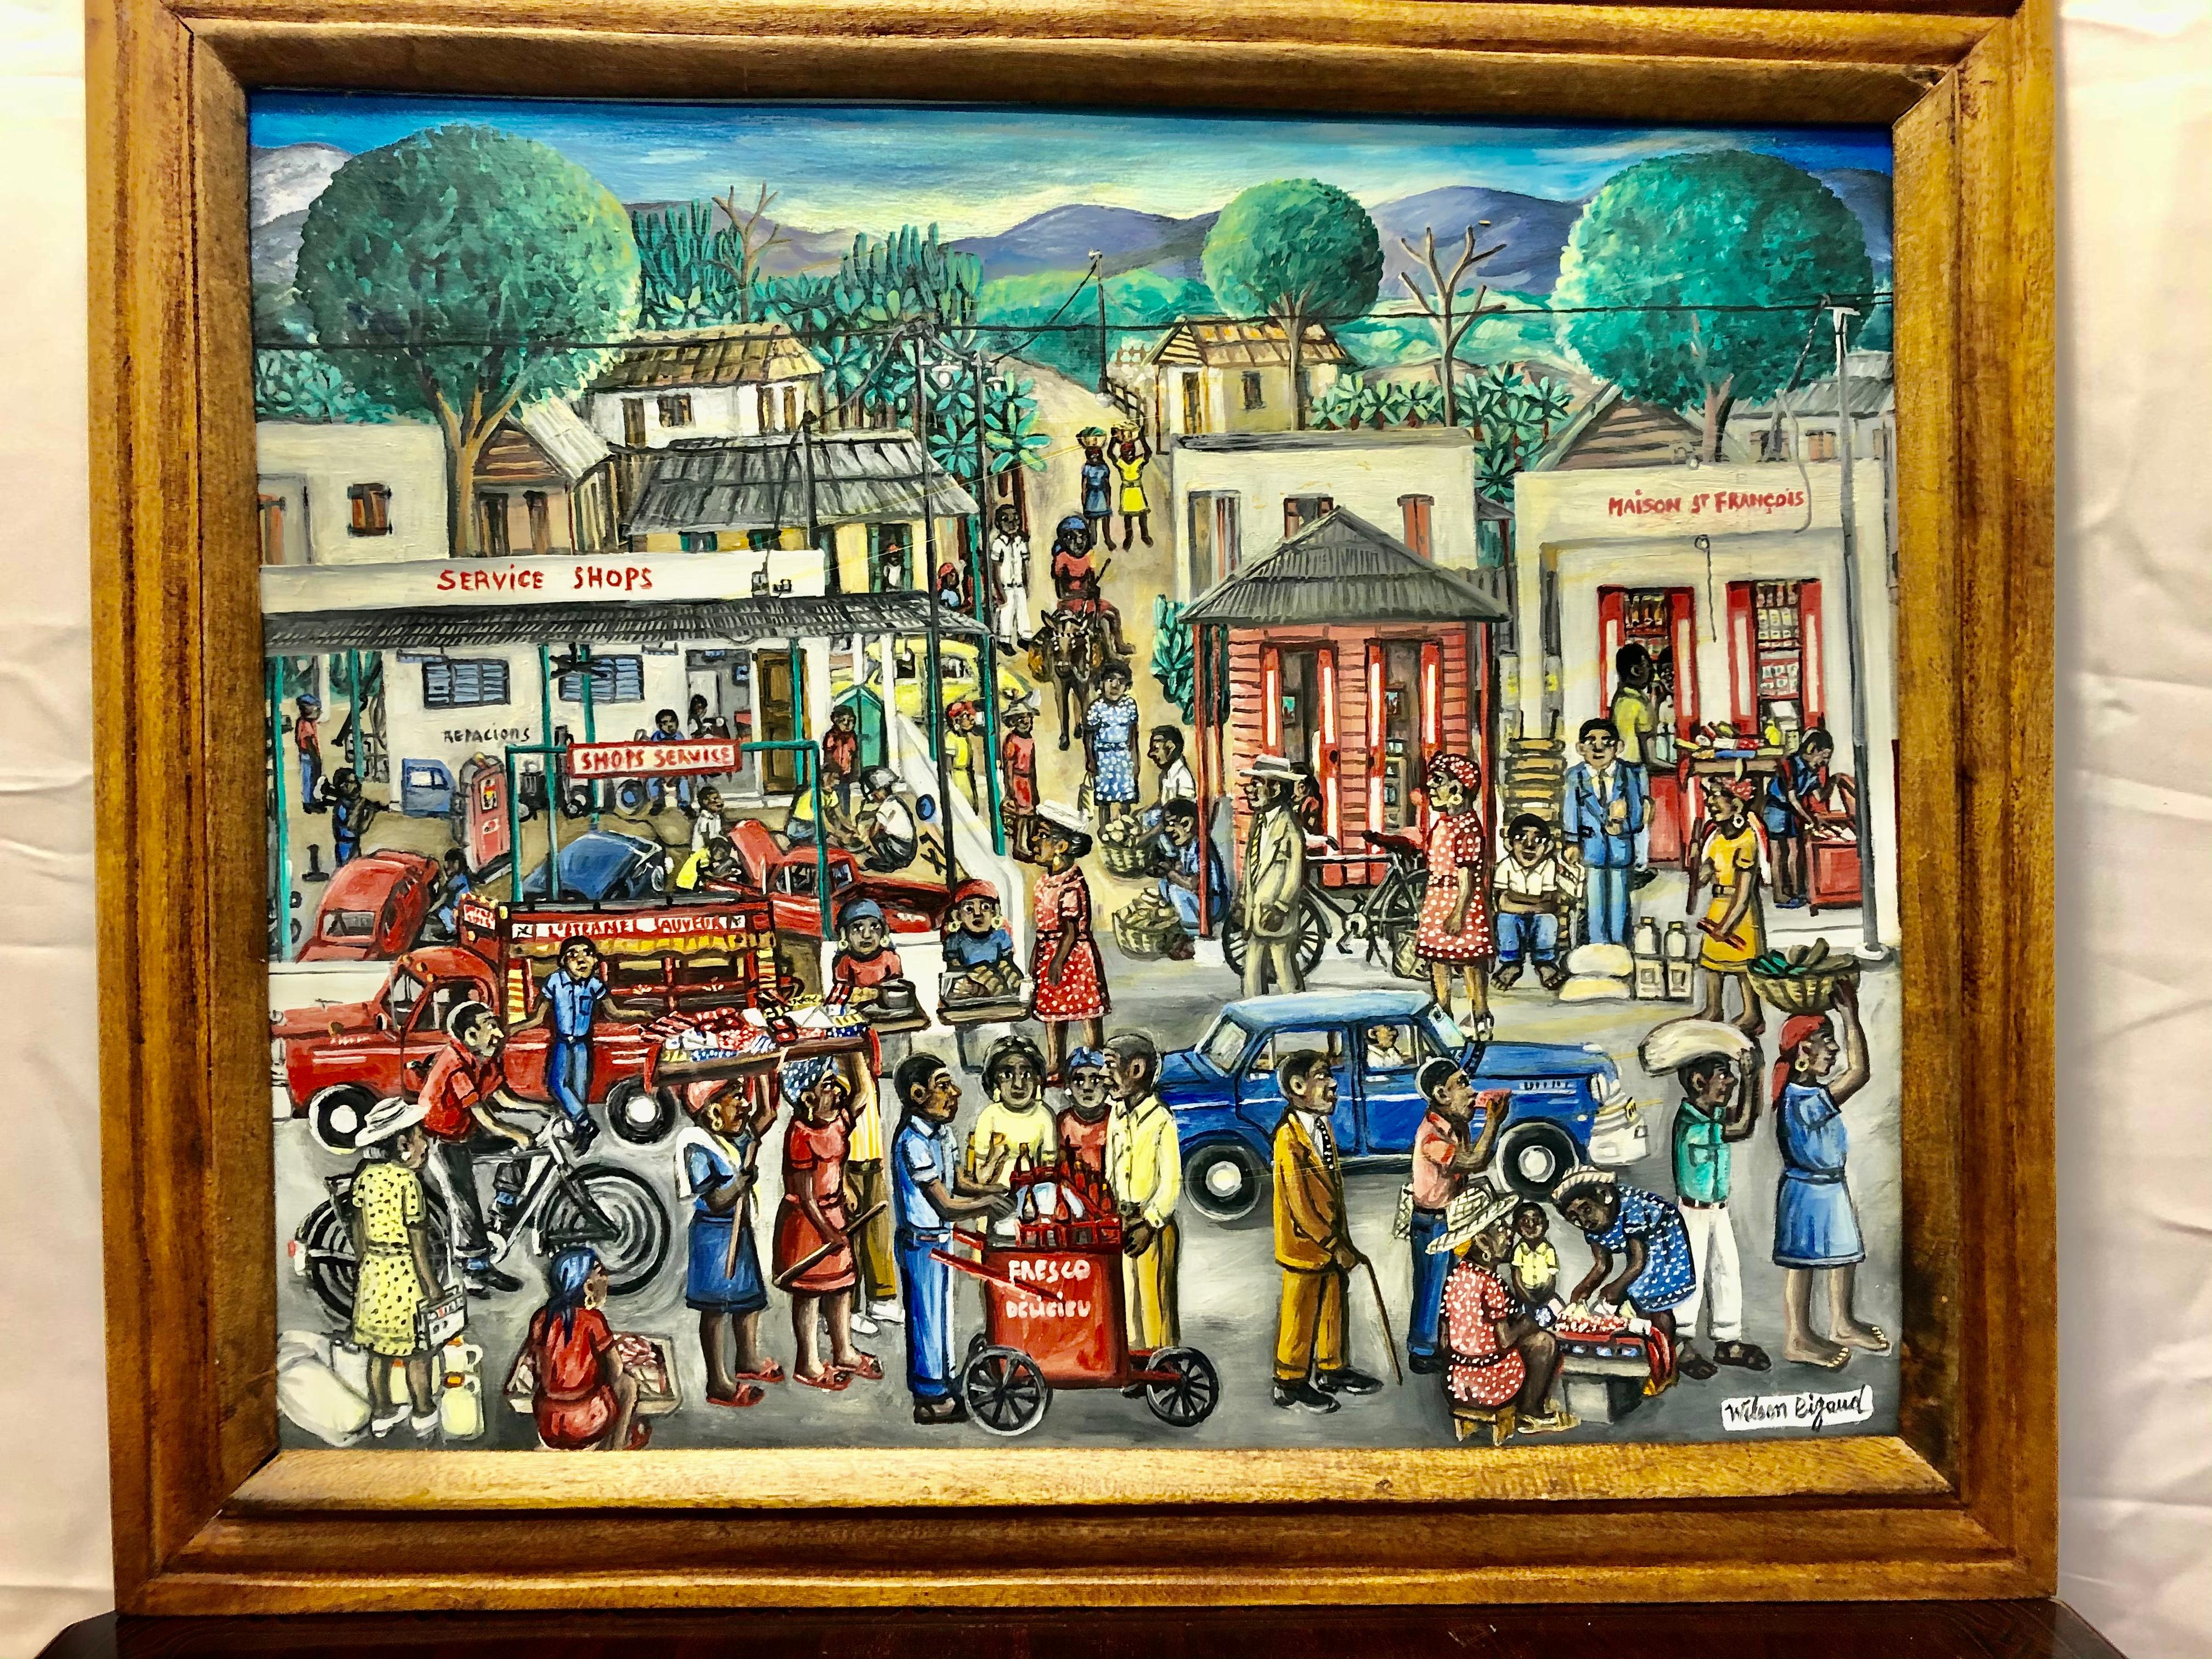 Wilson Bigaud : 1931-2010. Artistics haïtiens bien répertoriés avec des résultats de ventes aux enchères de plus de 11 000 $. Il est surtout connu pour ses descriptions de la vie quotidienne en Haïti. Il s'agit du plus bel exemple de son travail que